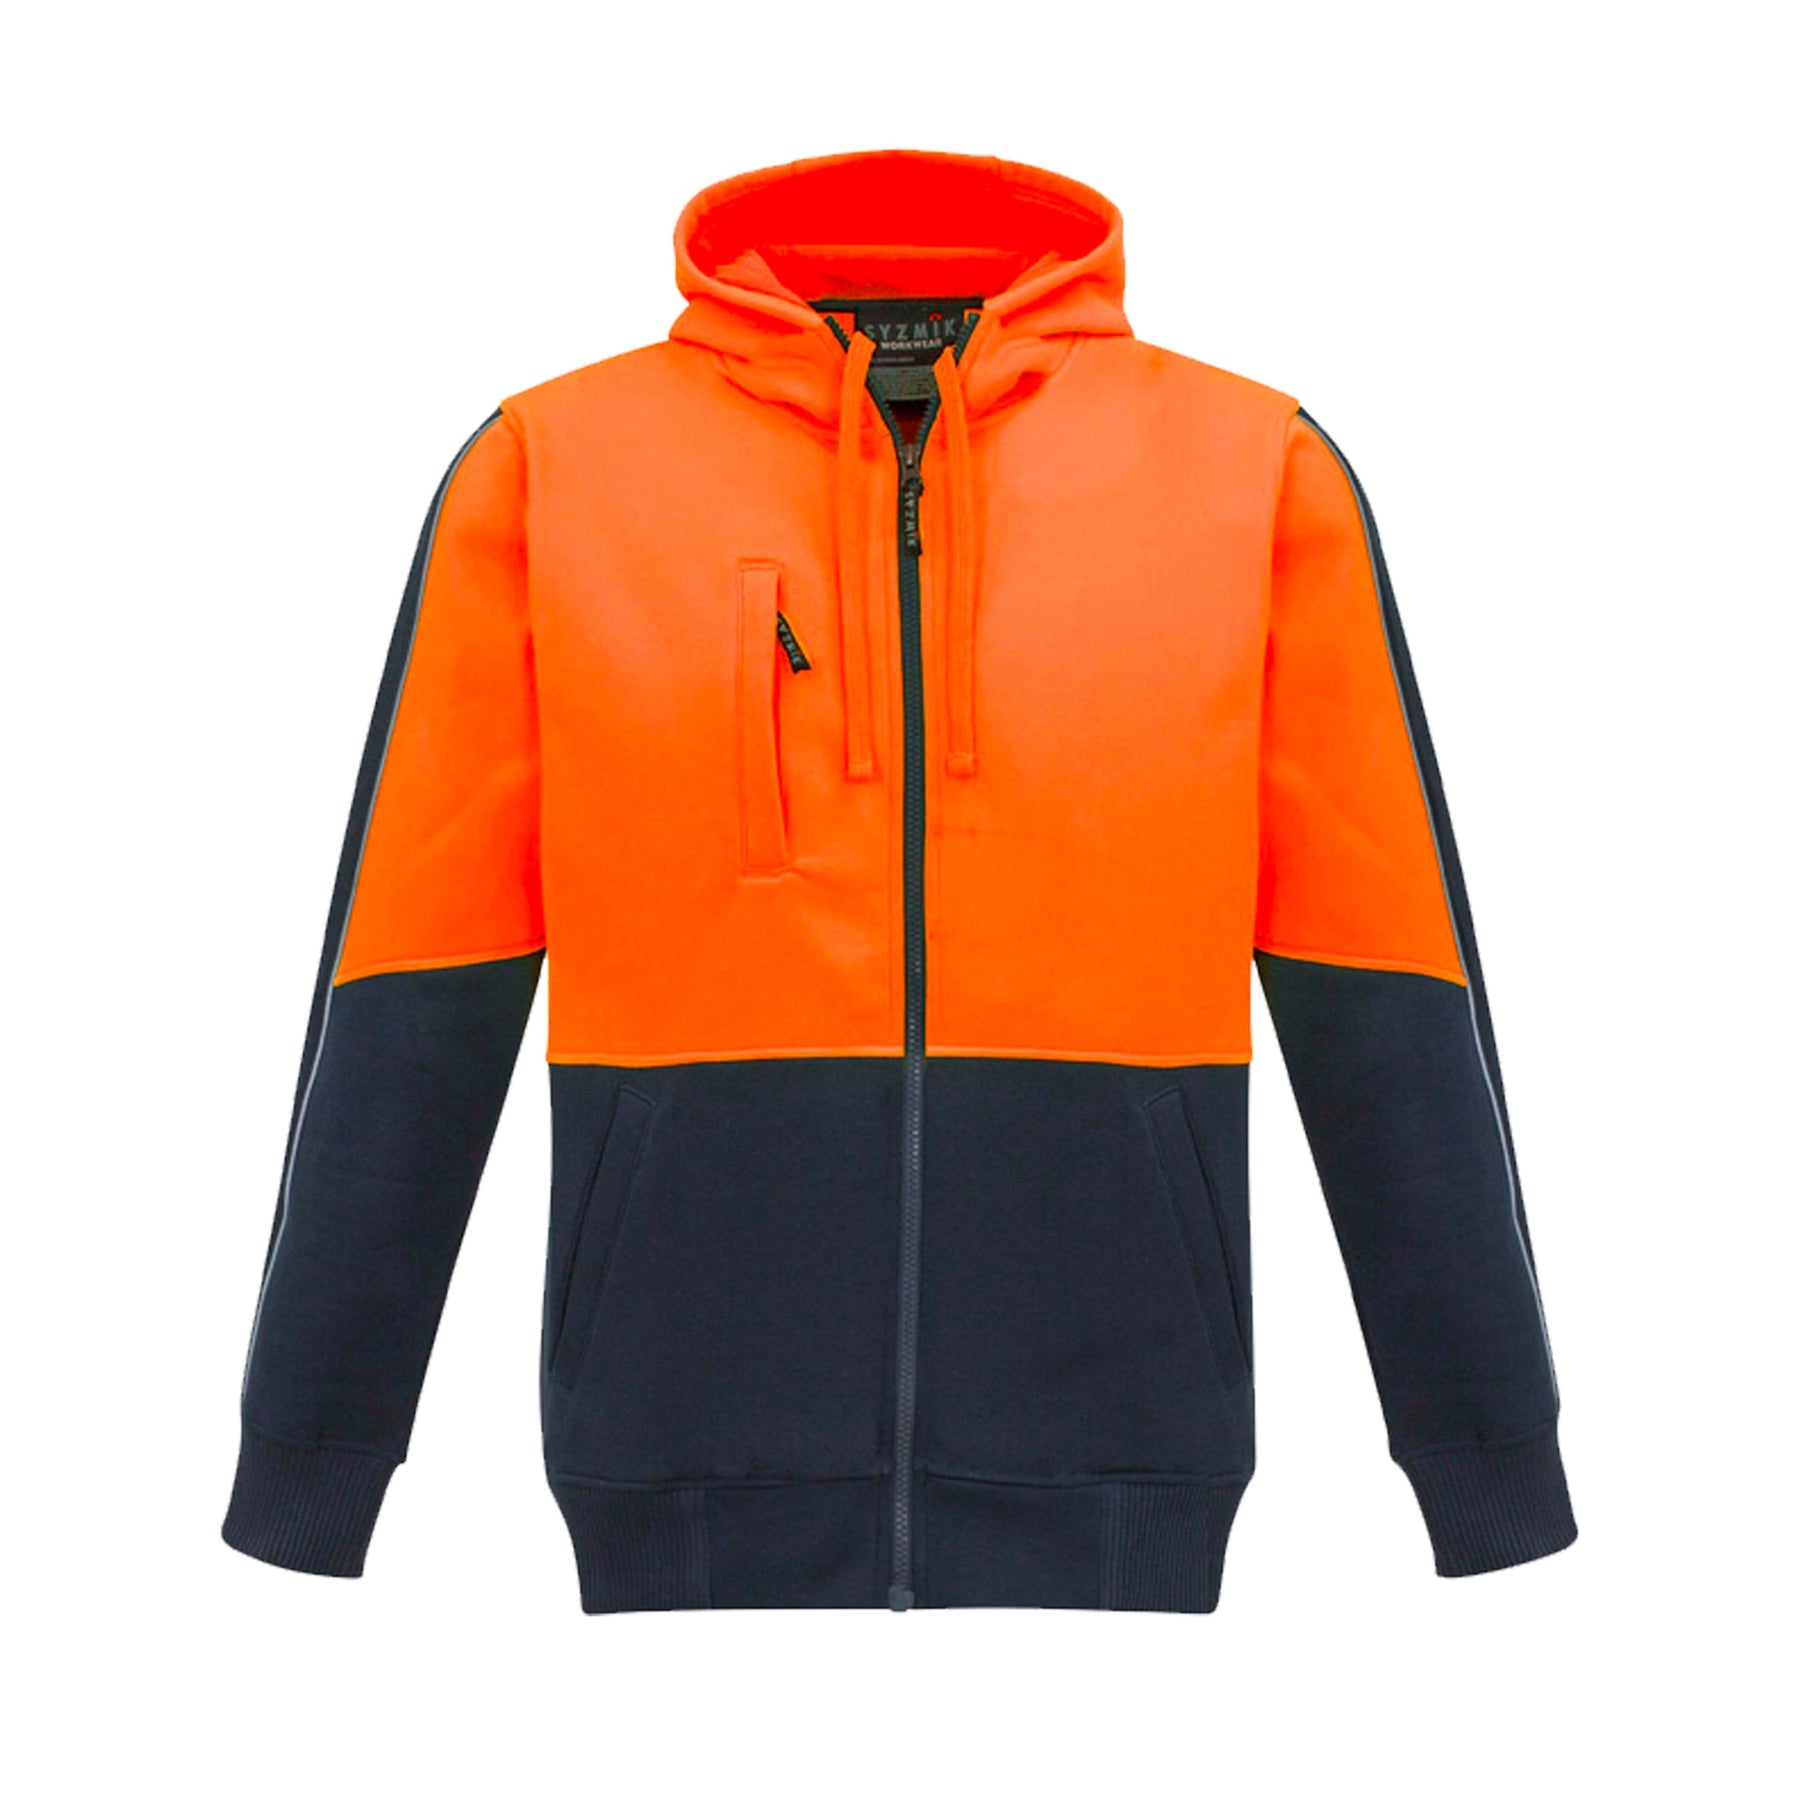 syzmik hi vis full zip hoodie in orange navy